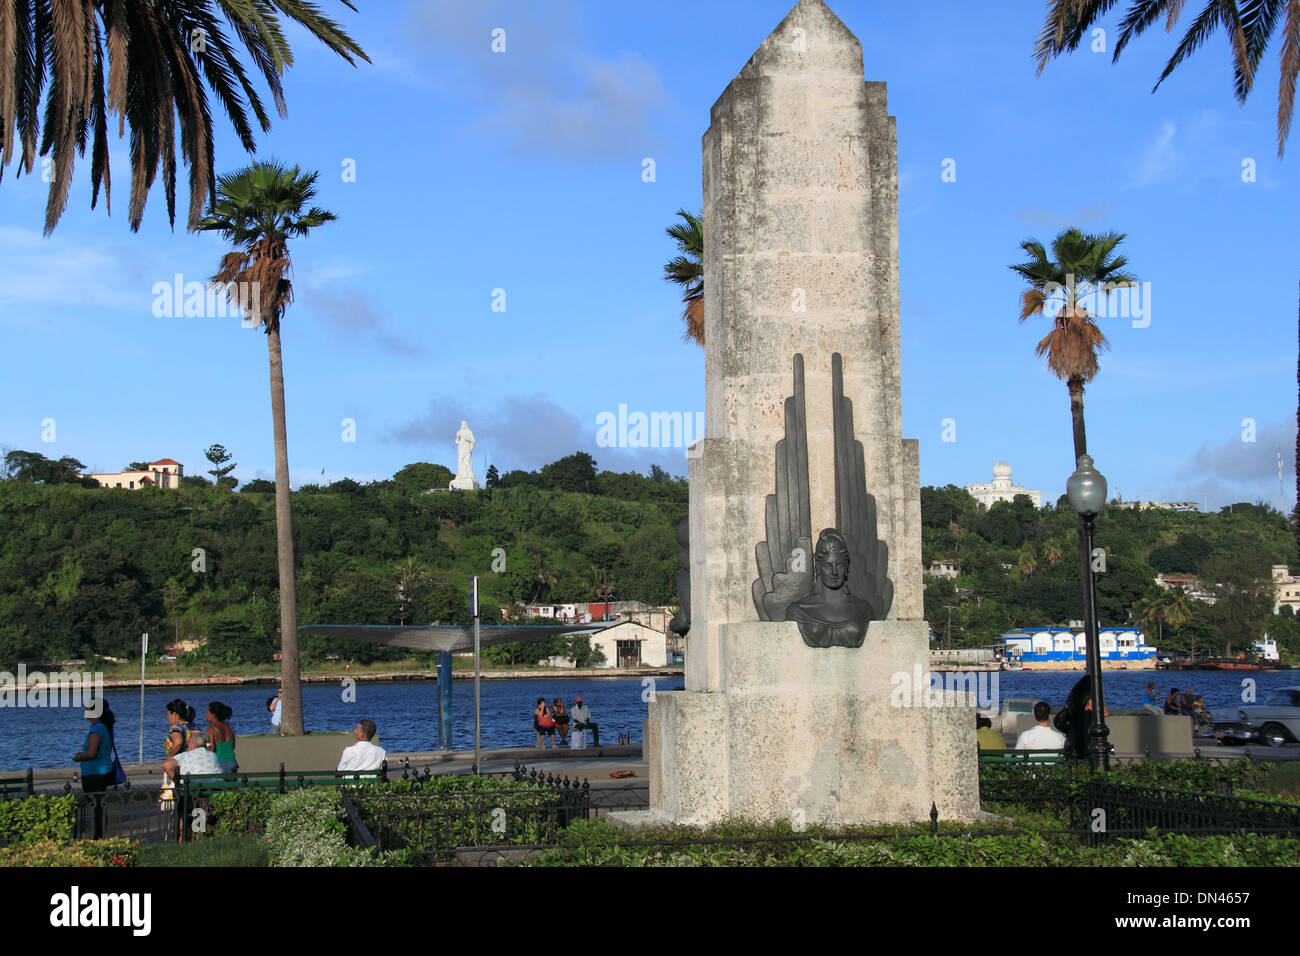 Monumento a Los Marinos Muertos en La Segunda Guerra Mundial, Old Havana (La Habana Vieja), Cuba, Caribbean Sea, Central America Stock Photo